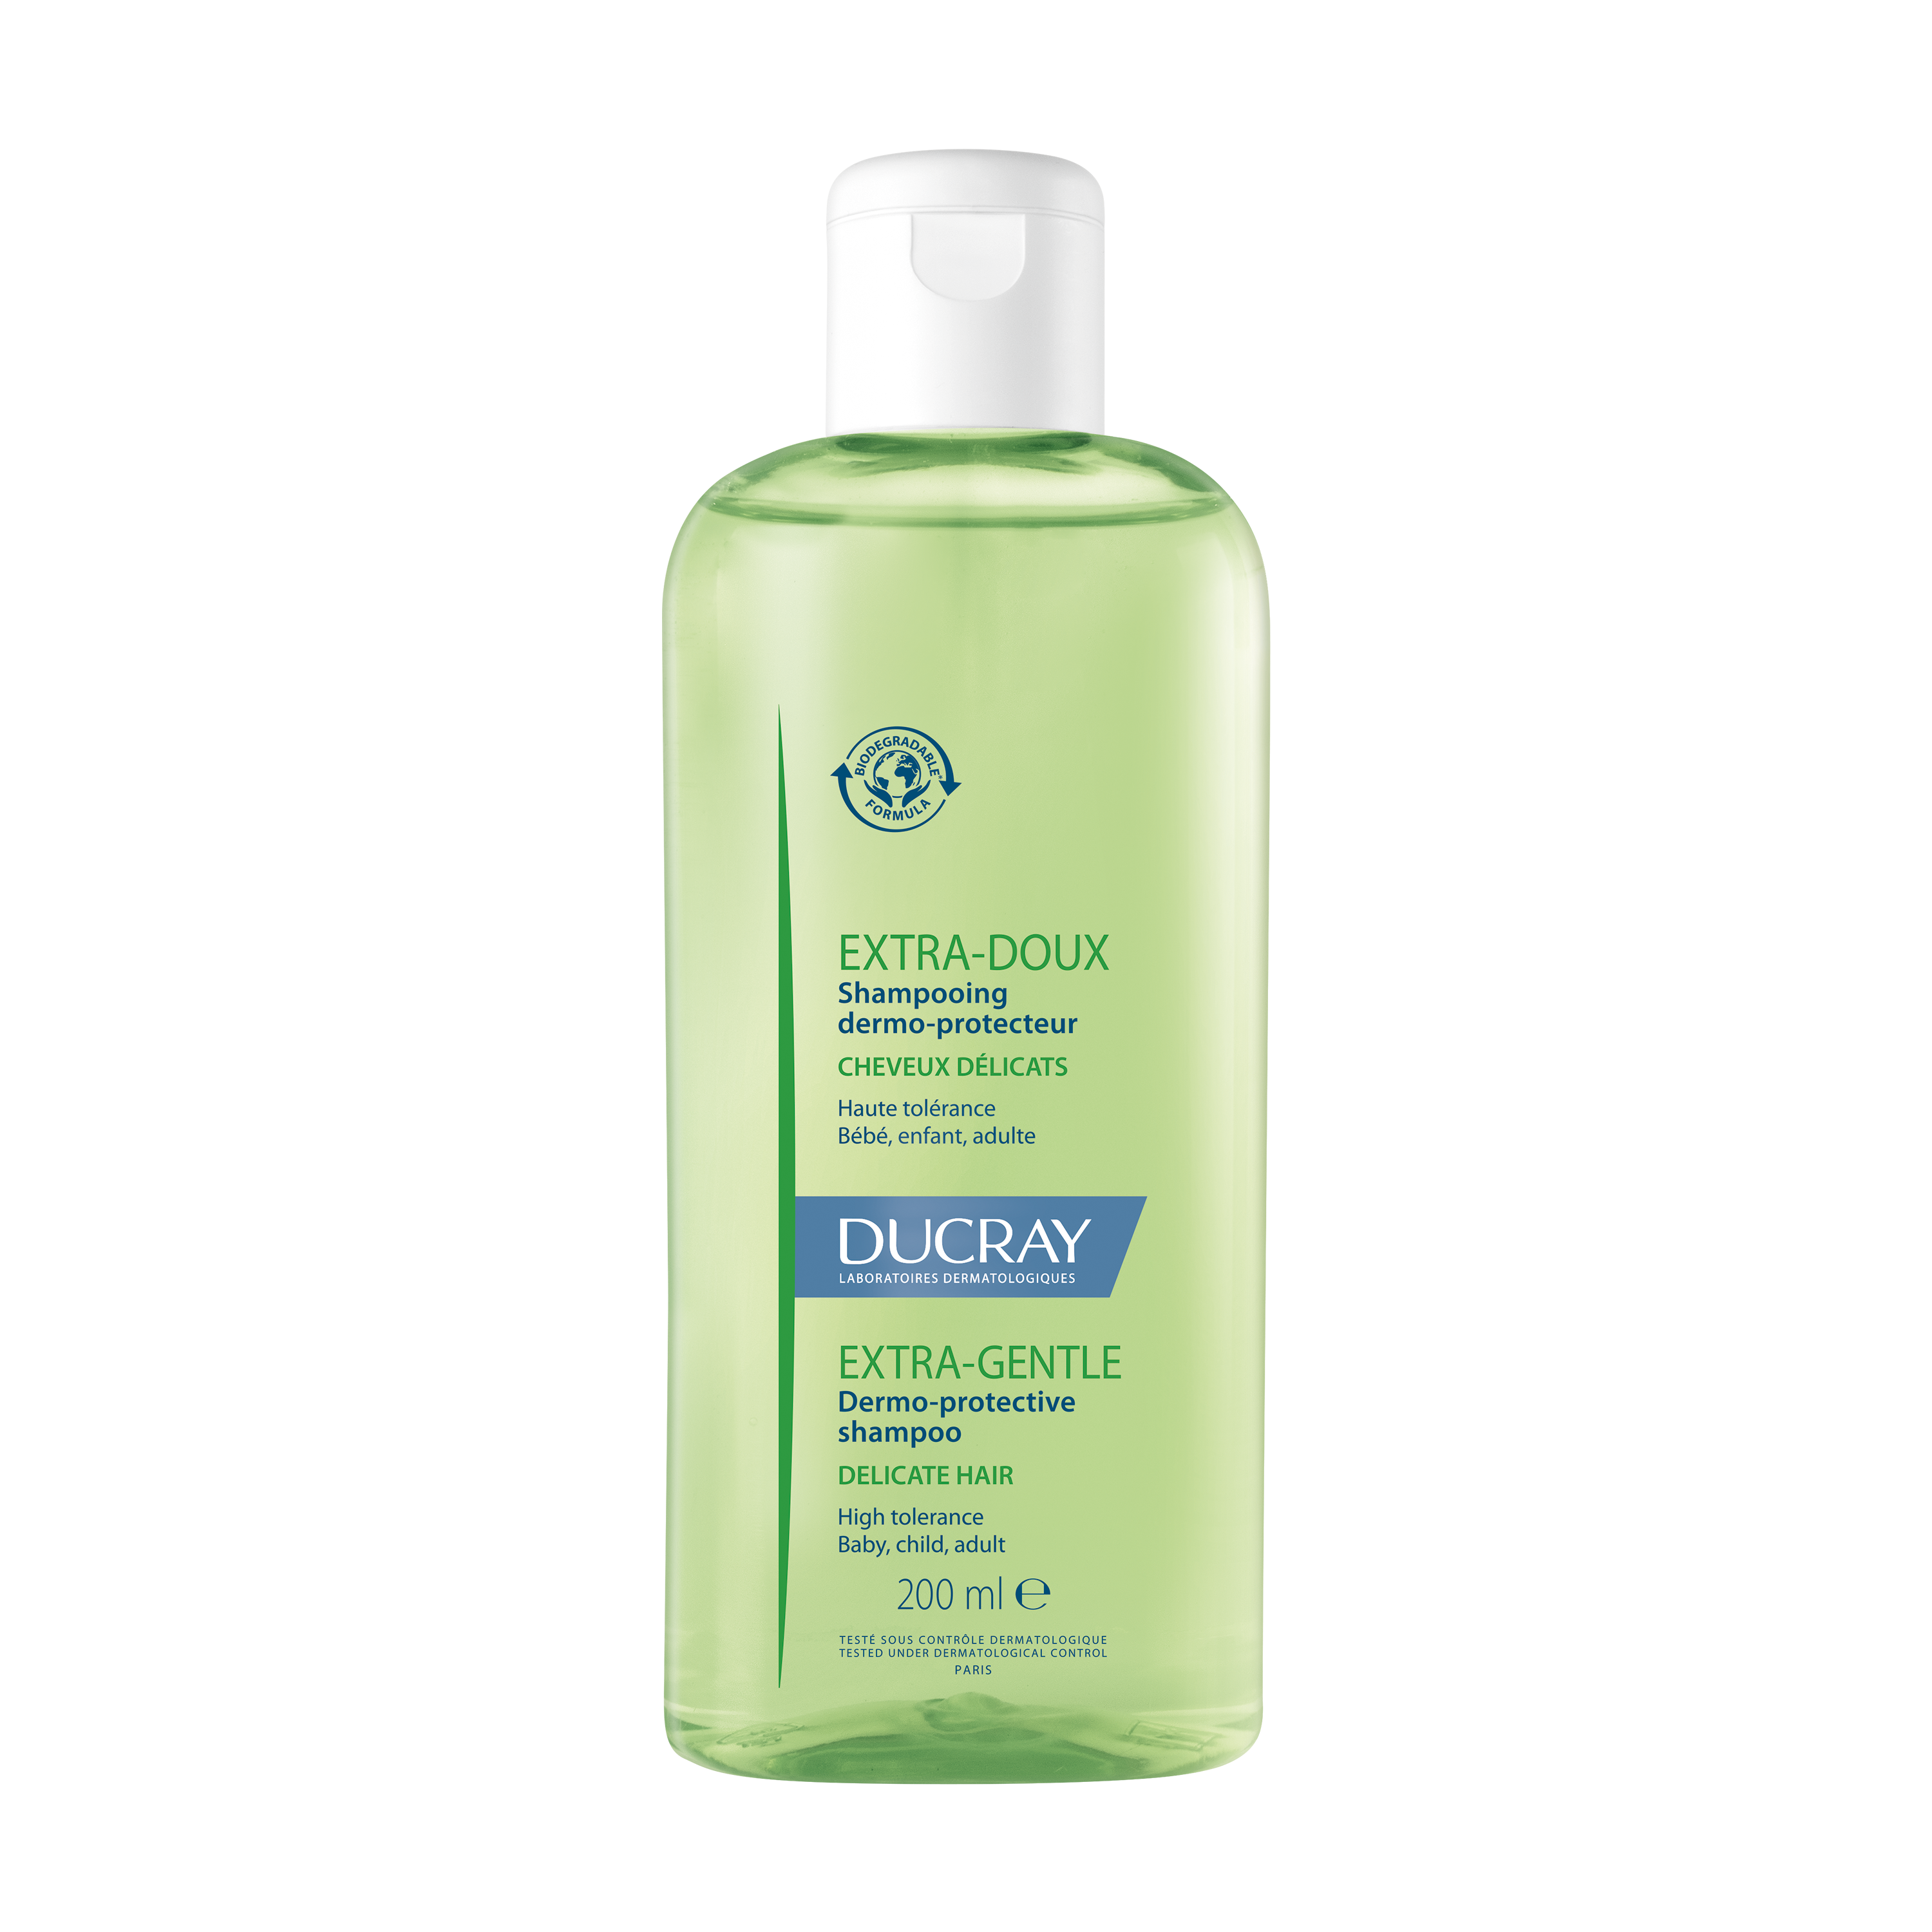 ექსტრა ნაზი დერმო დამცავი შამპუნი - დუკრე / EXTRA GENTLE Dermo protective shampoo – DUCRAY